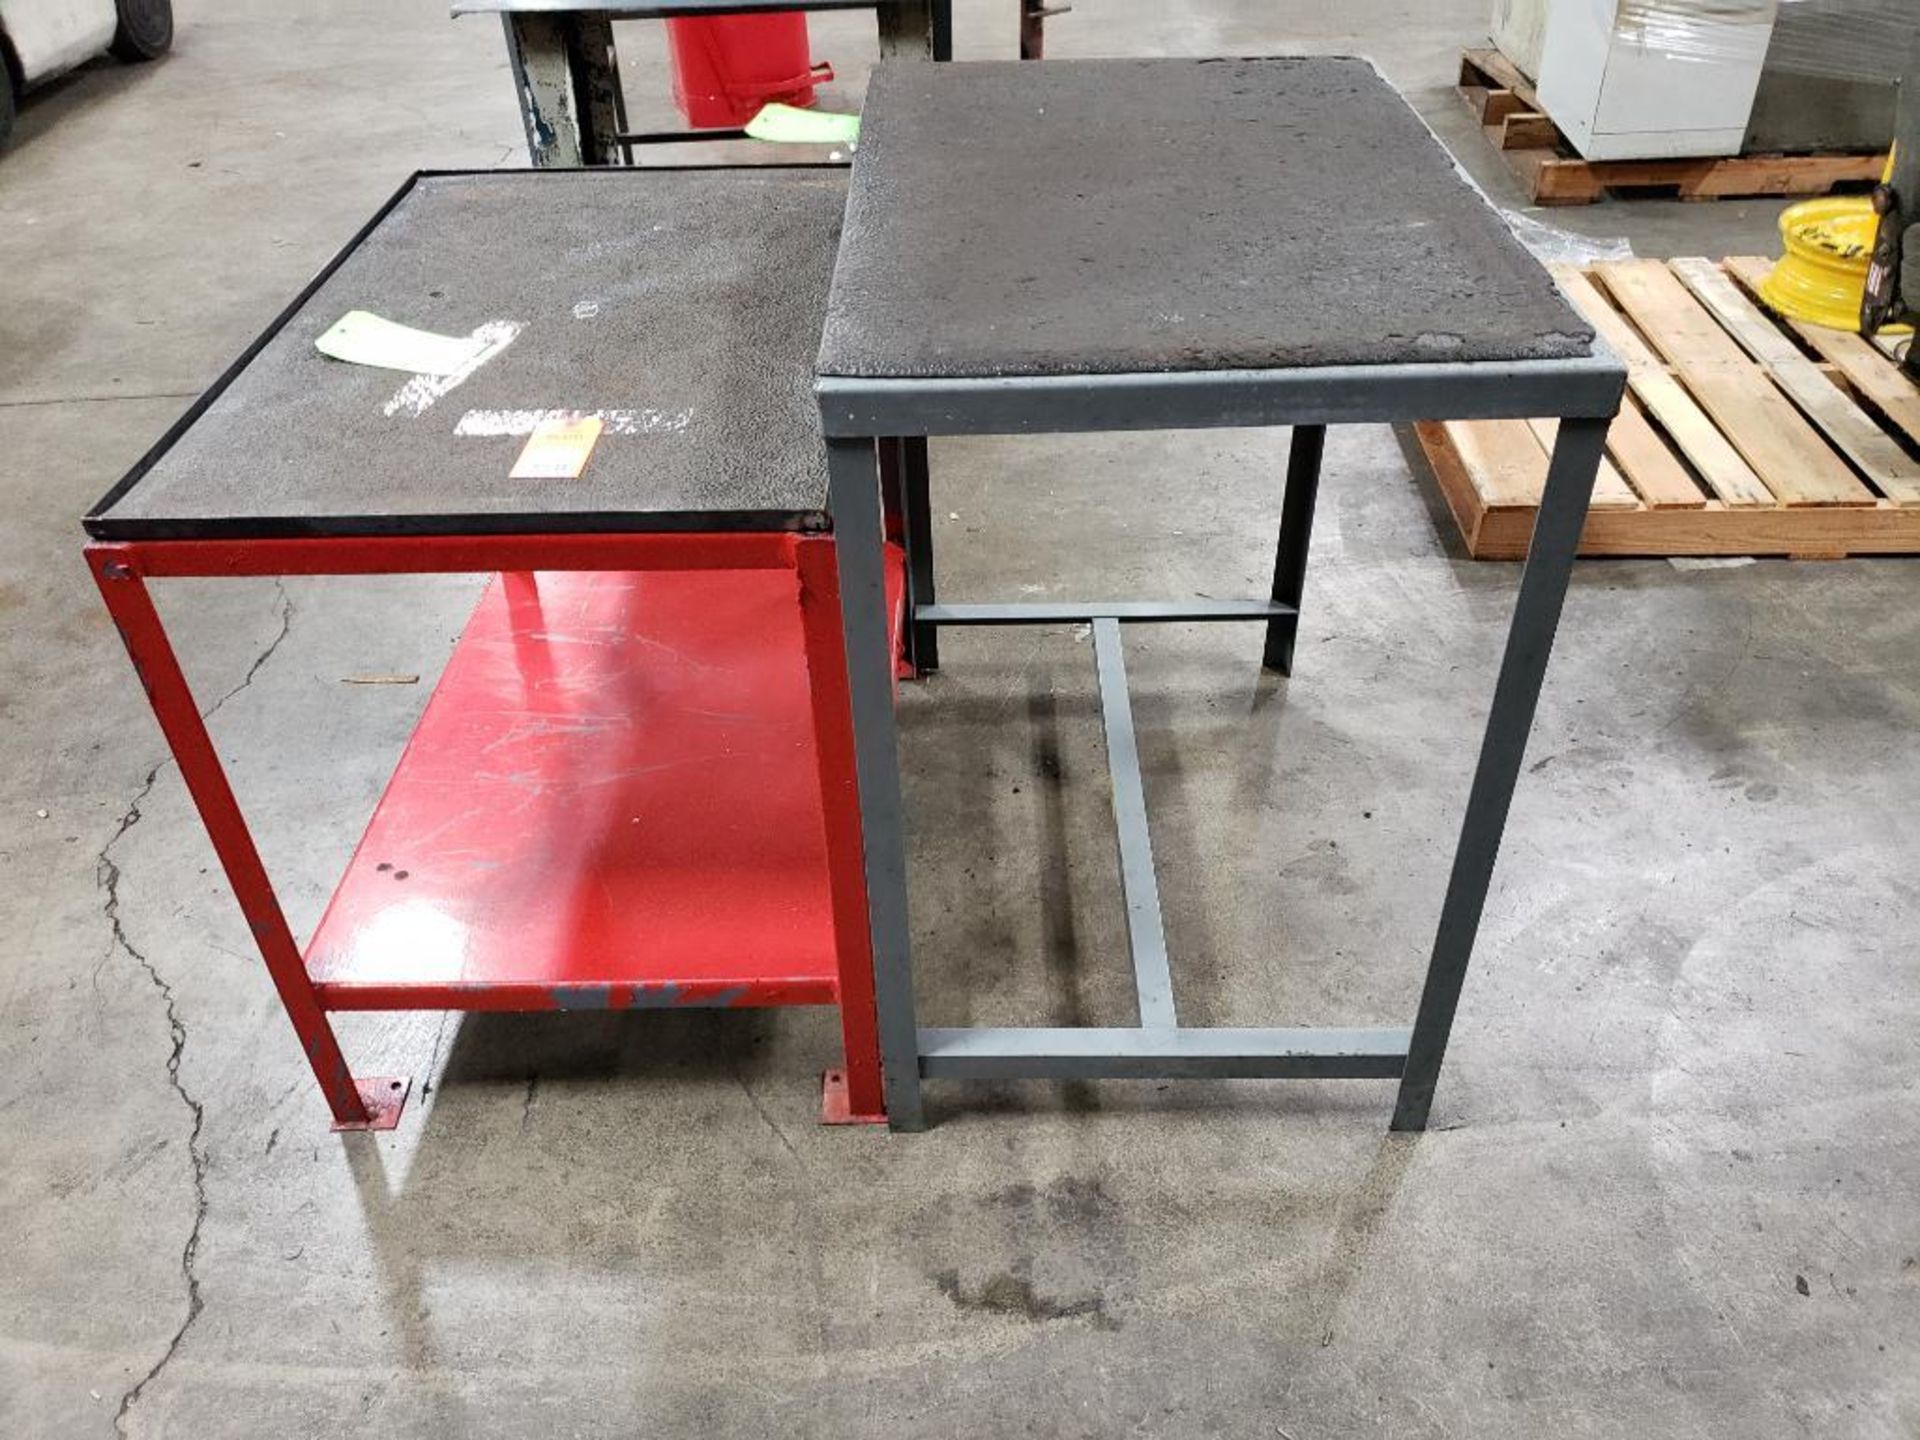 Qty 2 - Industrial work table. 36x24x36, 36x24x31 WxDxH.